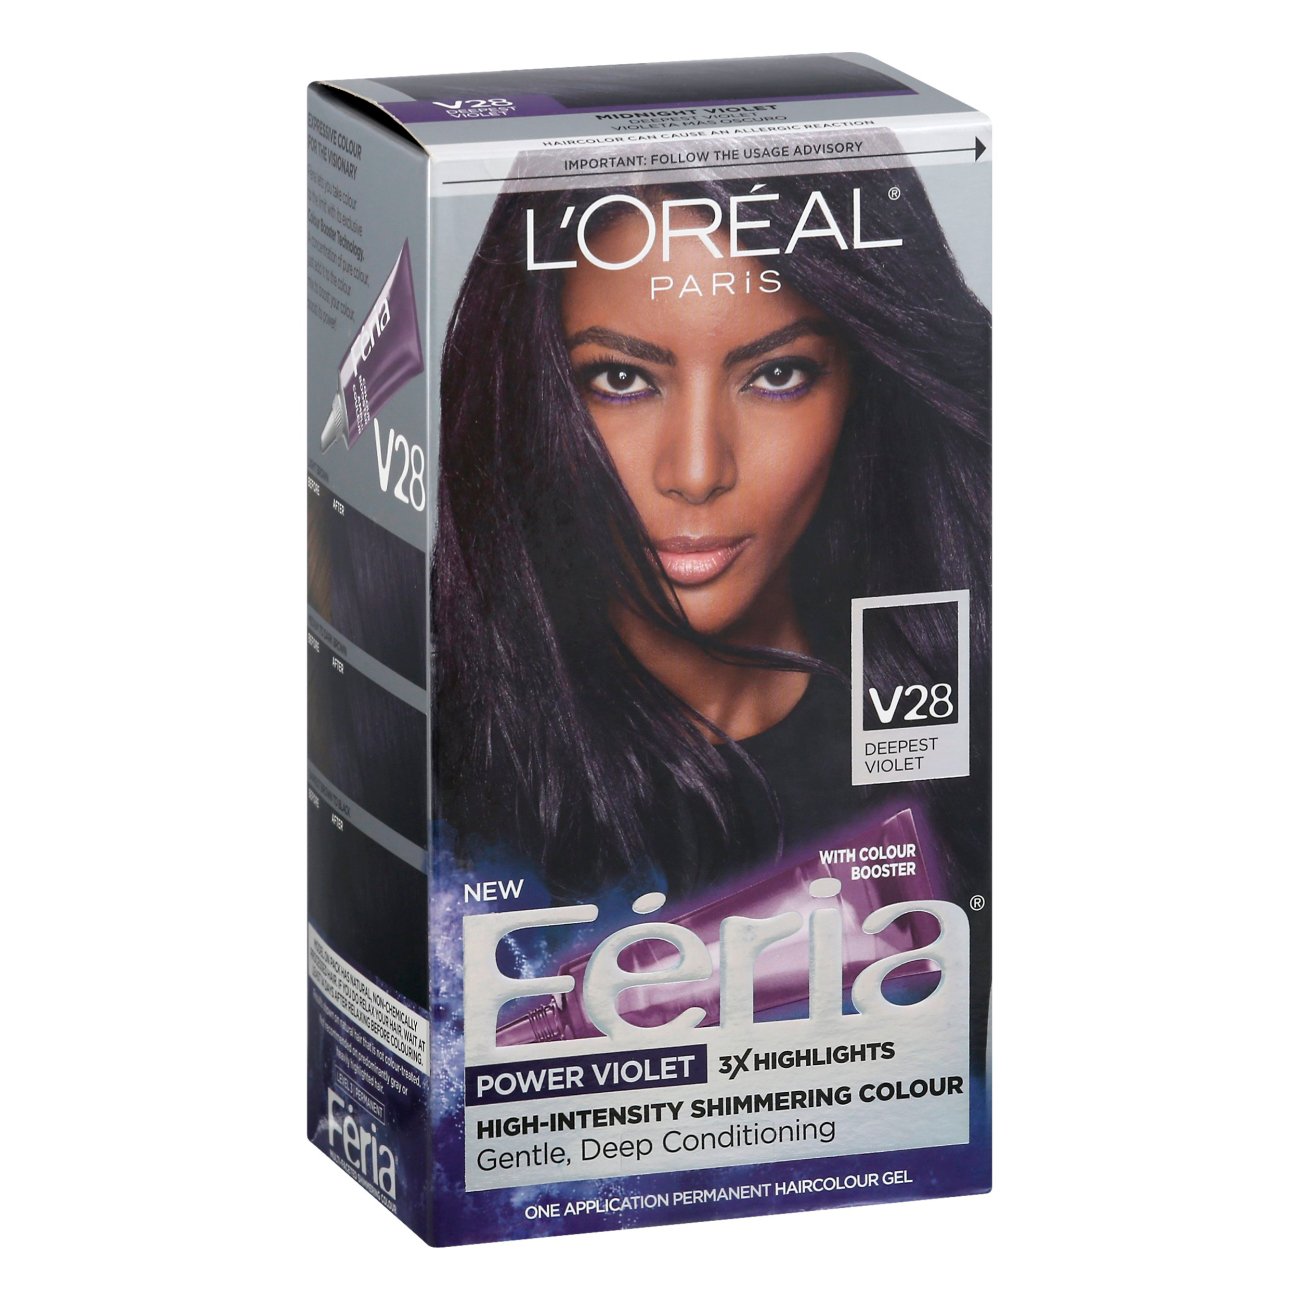 L'Oréal Paris Feria Multi-Faceted Permanent Hair Color - V28 Deepest Violet  - Shop Hair Care at H-E-B